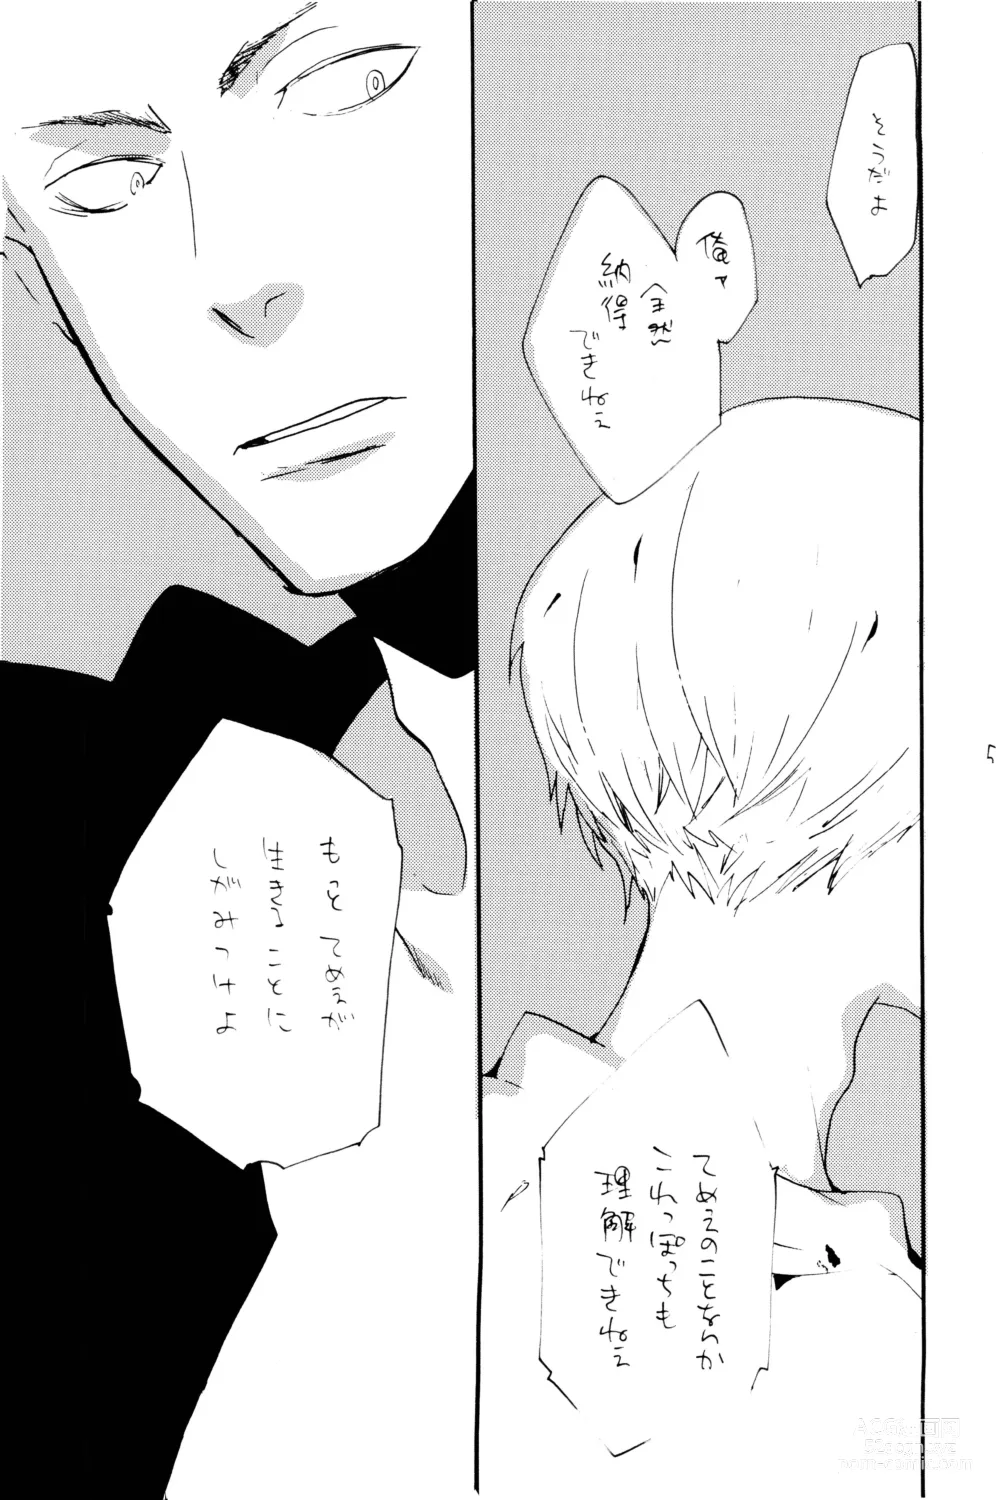 Page 54 of doujinshi 0-do kara Machibito Kitaru